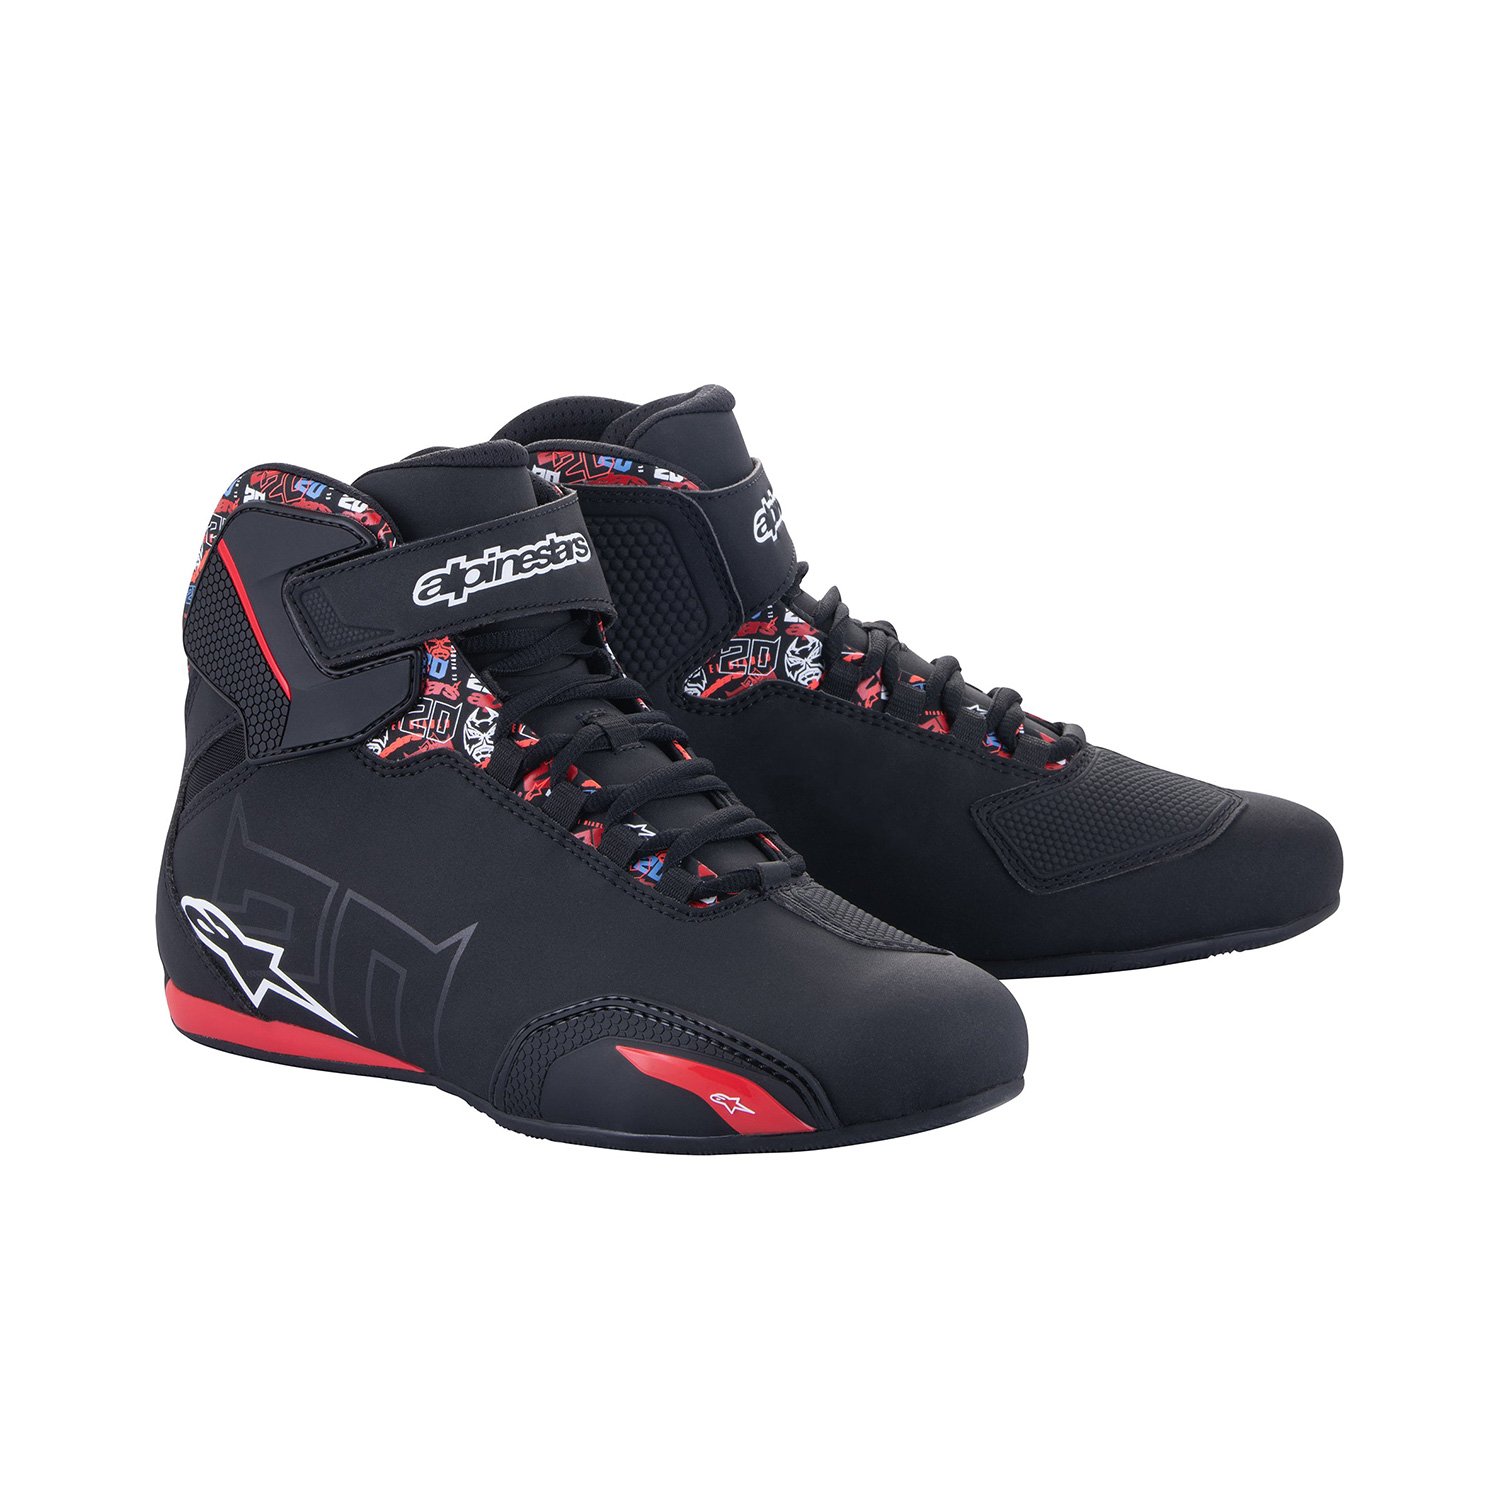 Image of Alpinestars FQ20 Sektor Shoes Black Bright Red Size US 105 EN